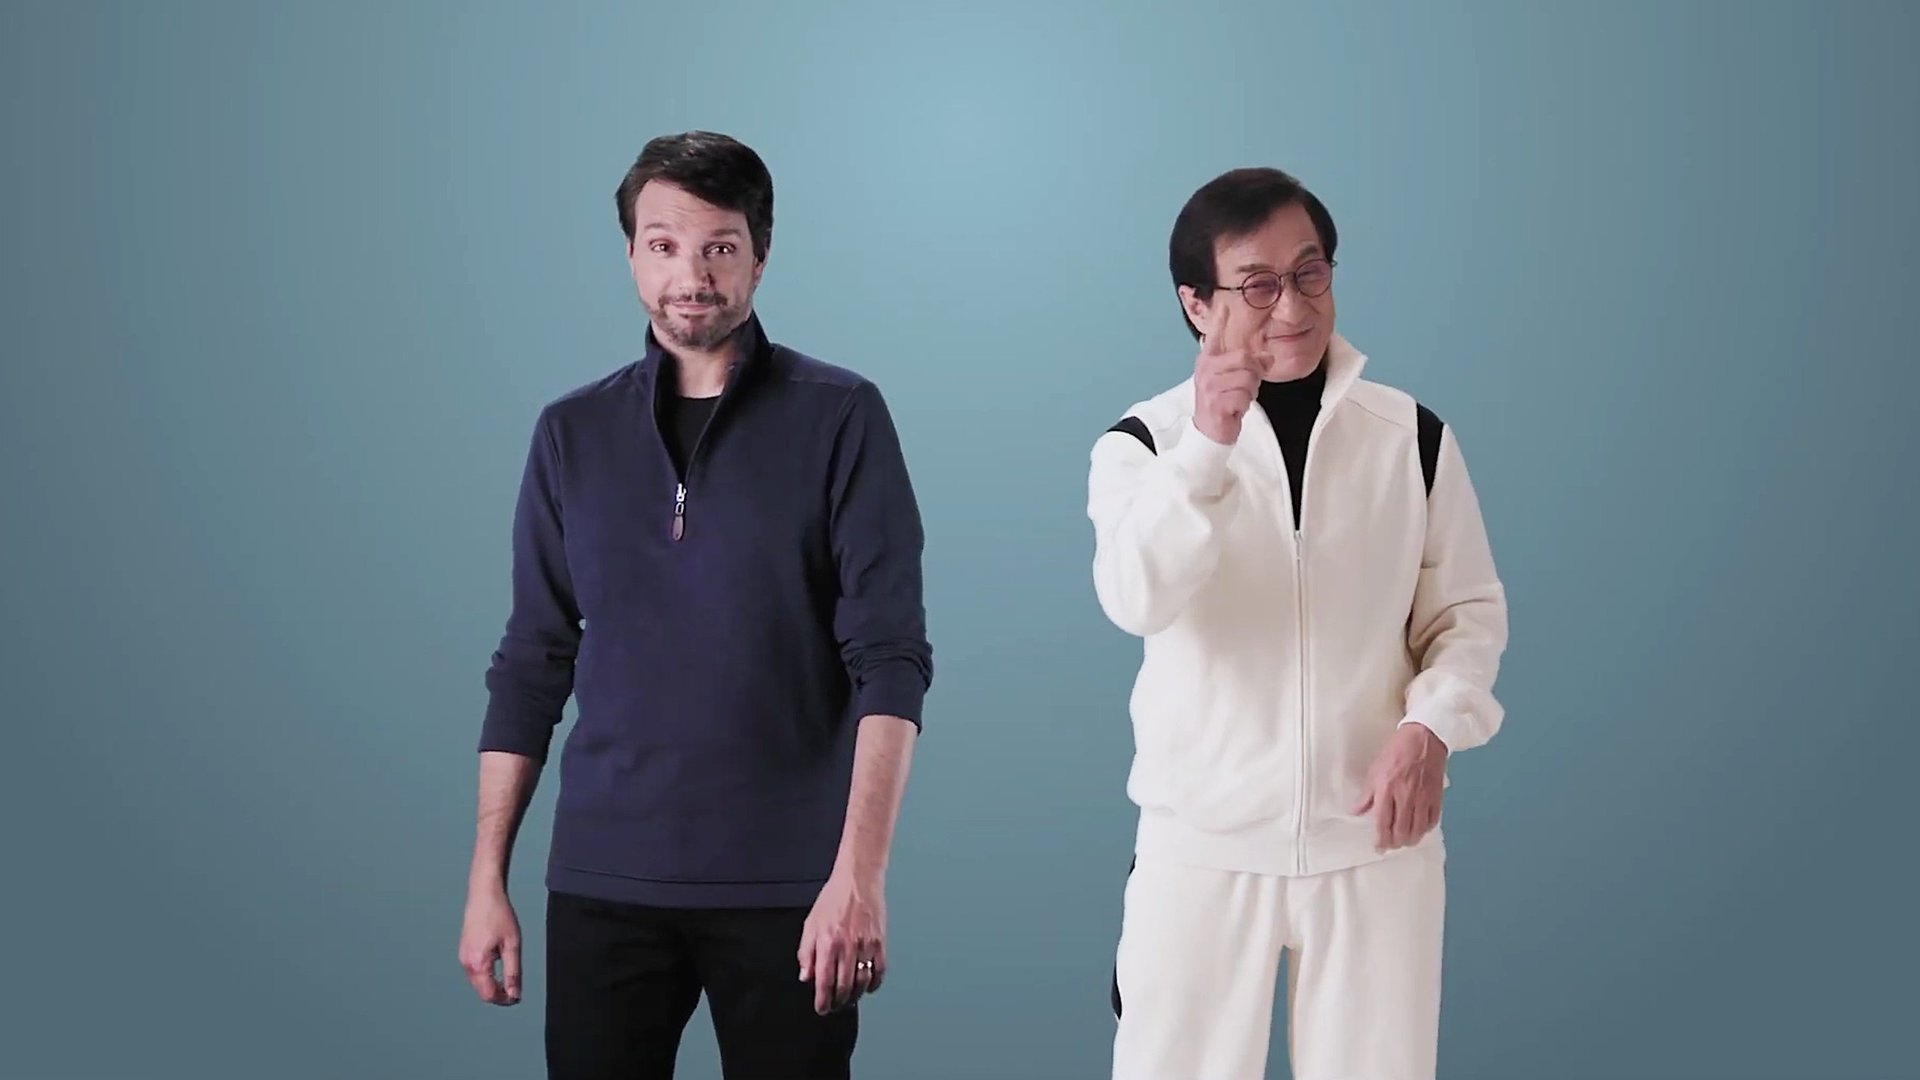 #Flut an Bewerbungen für neuen „Karate Kid“ mit Jackie Chan und Ralph Macchio